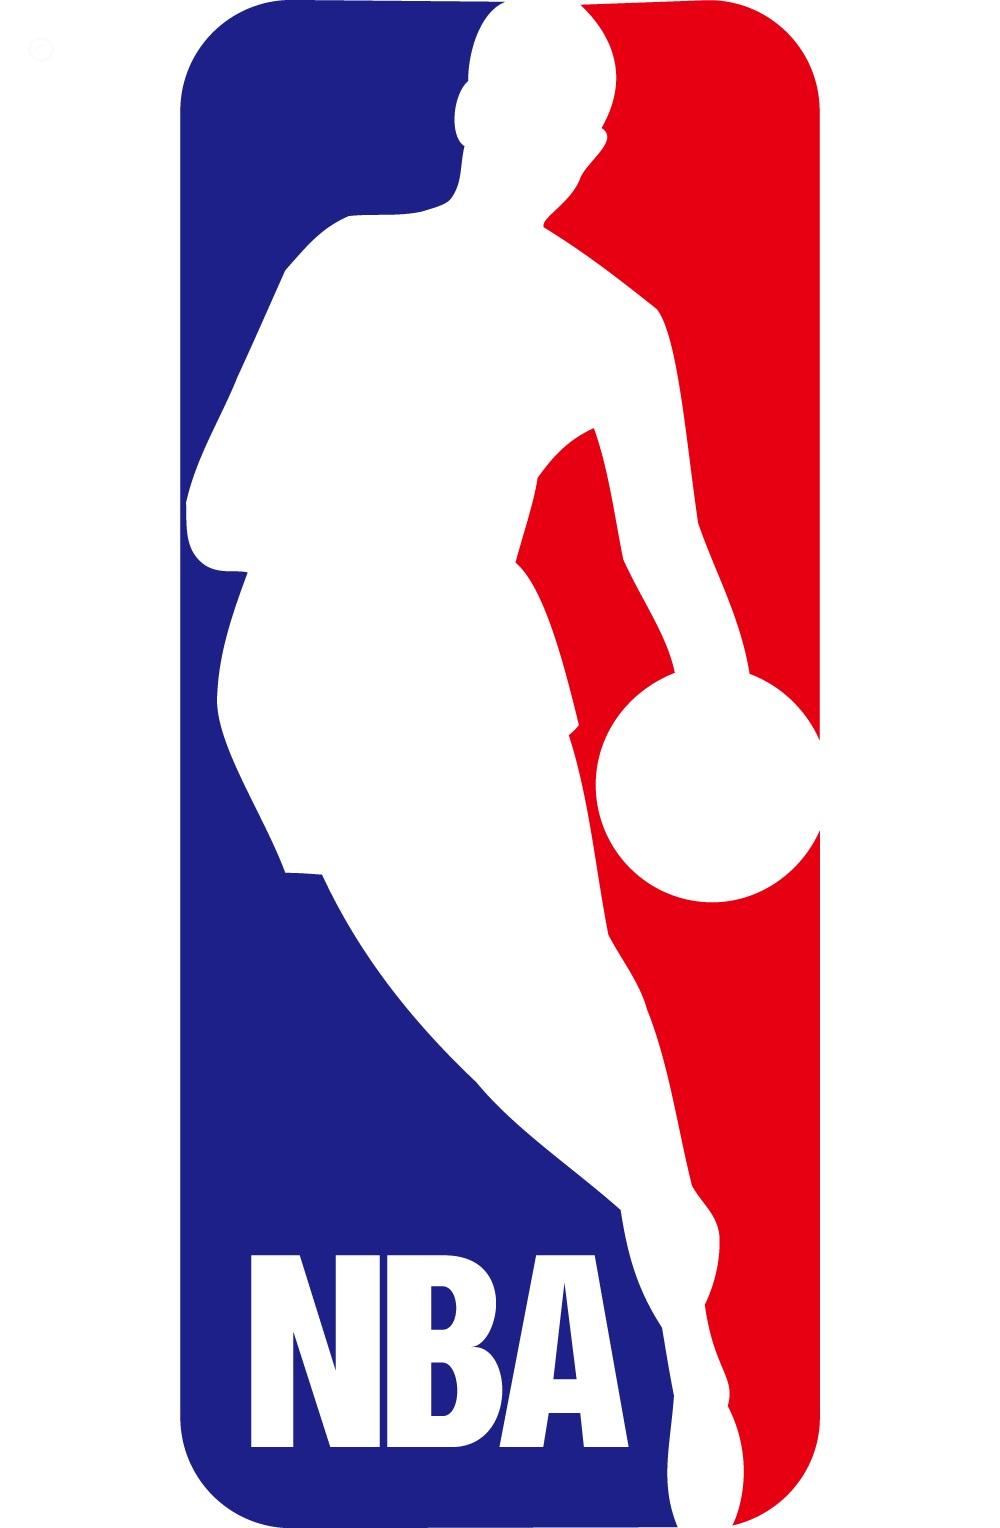 NBA Tv Trailer